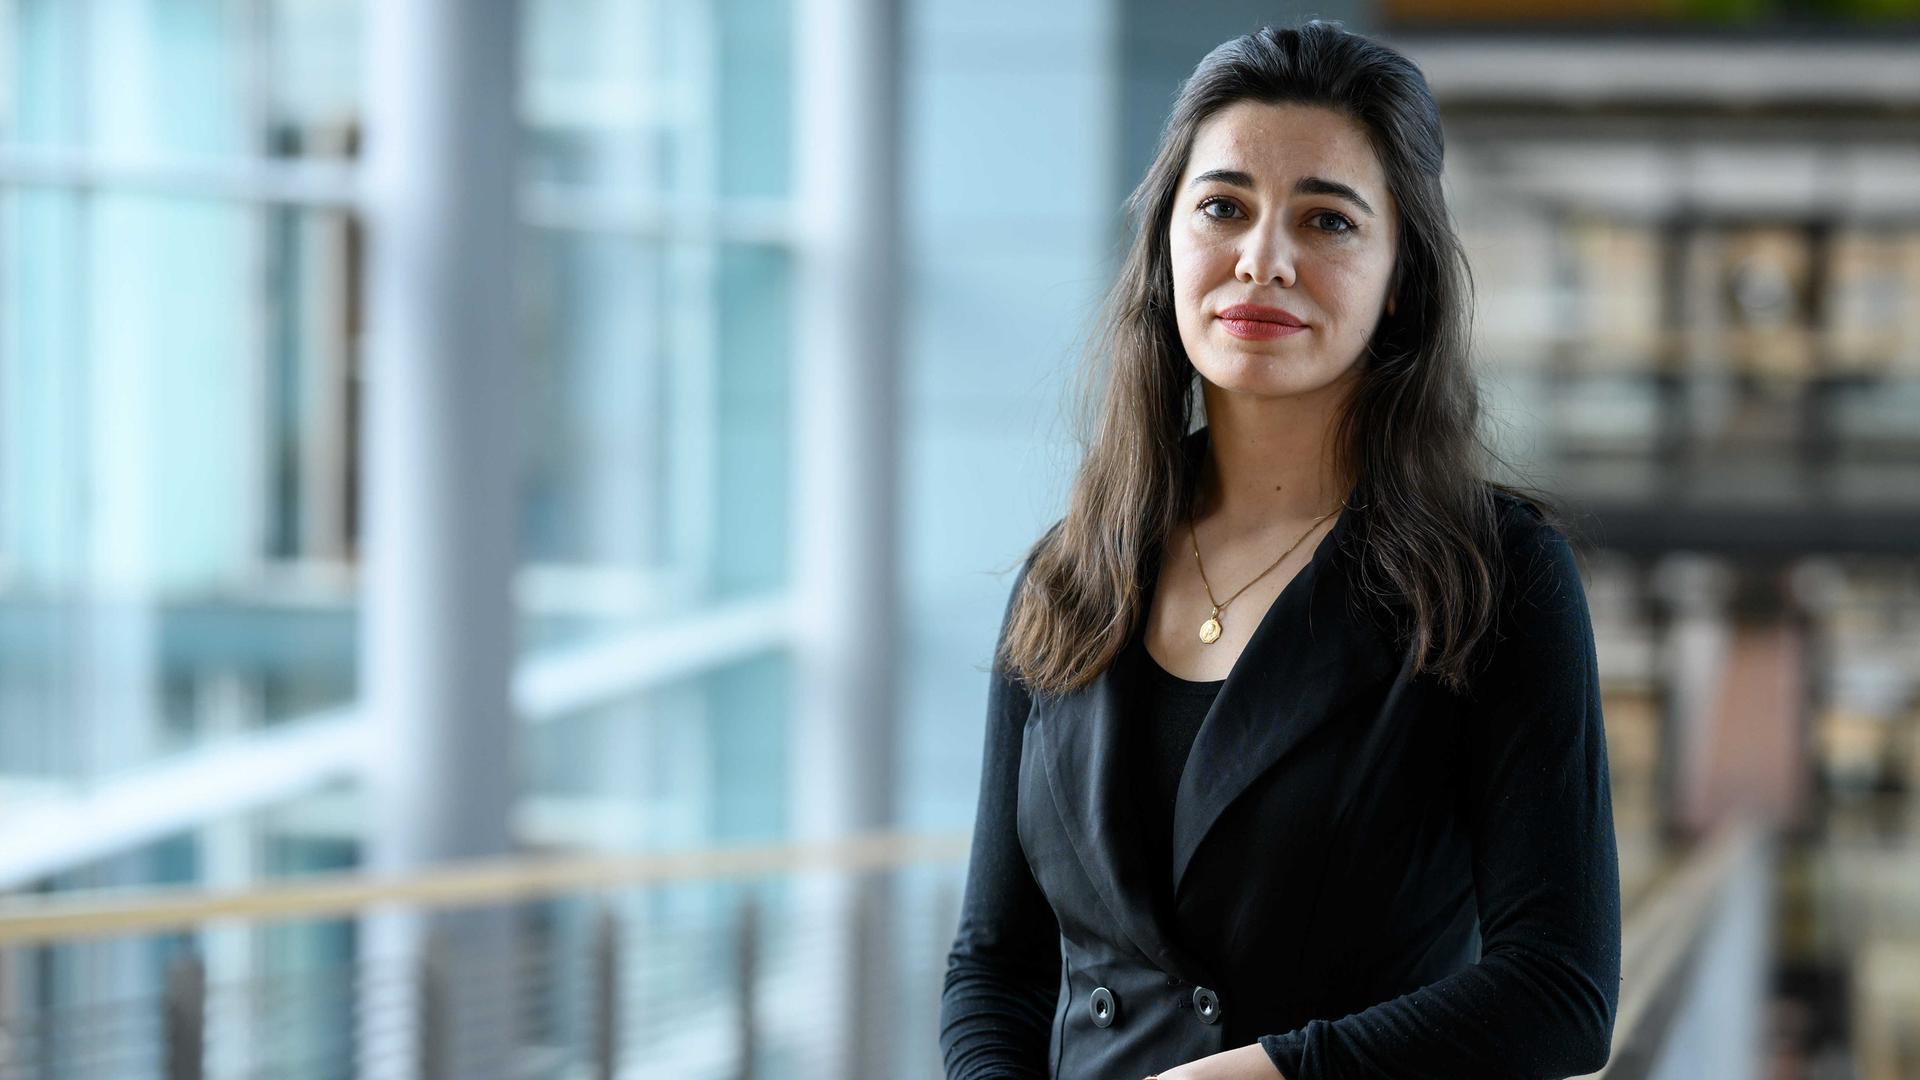 Gazelle Sharmahd, Tochter des im Iran zum Tode verurteilten Deutsch-Iraners Jamshid Sharmahd, steht im Deutschen Bundestag.